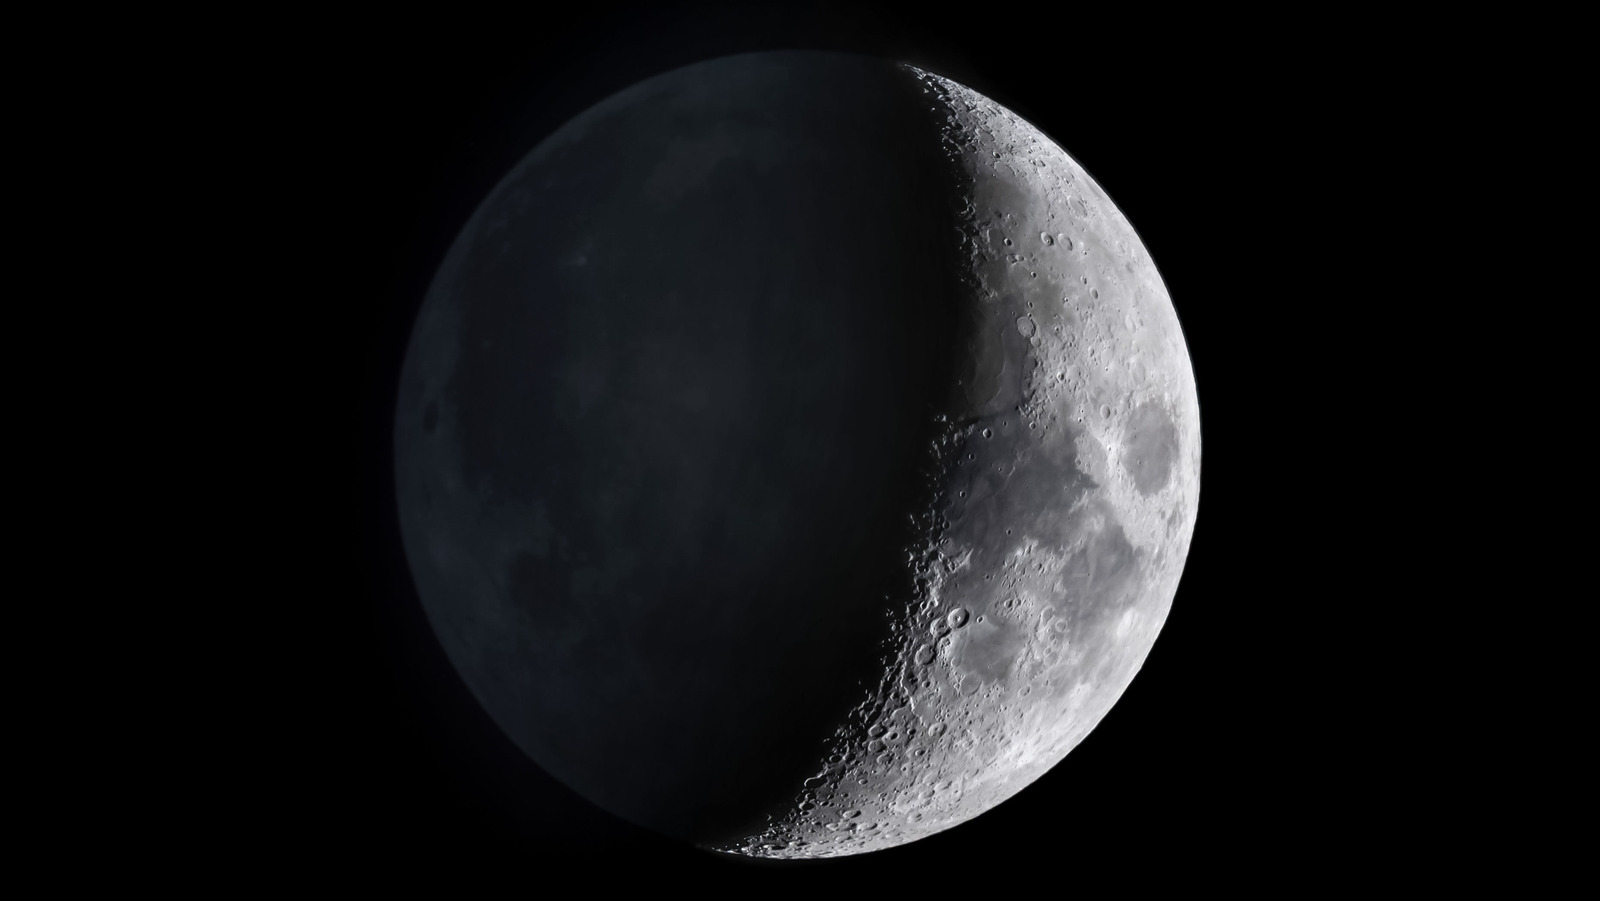 O grande mito sobre a lua que você precisa parar de acreditar